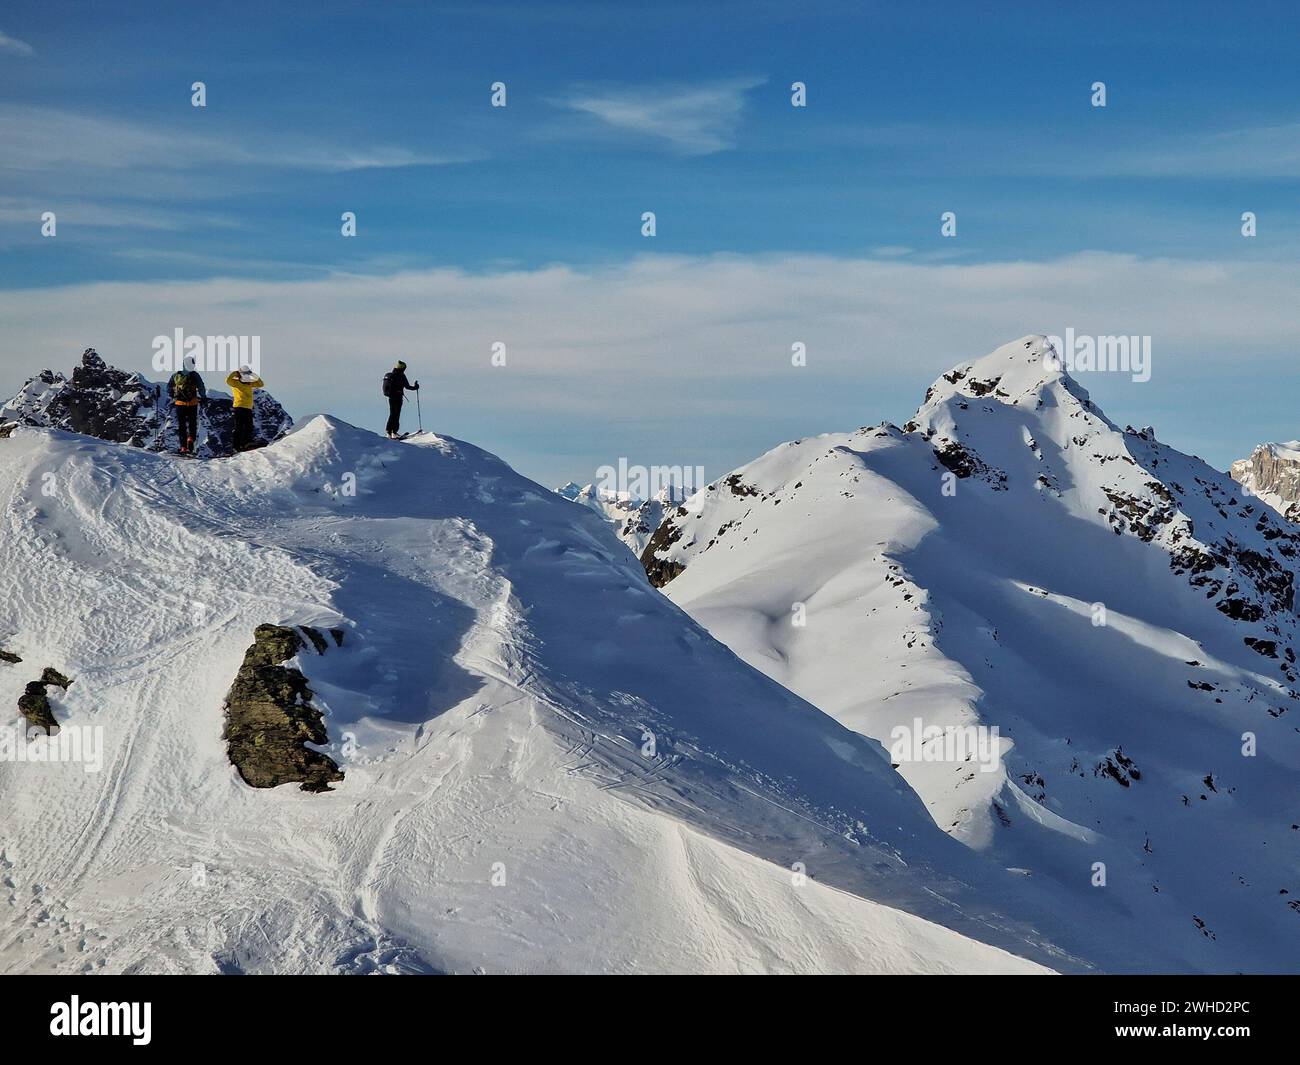 Austria, Vorarlberg, Montafon, Gargellen, Vergaldental, Silvretta, Vergaldner Schneeberg (2588 m), ski tour group at the summit, background Ritzenspitze Stock Photo